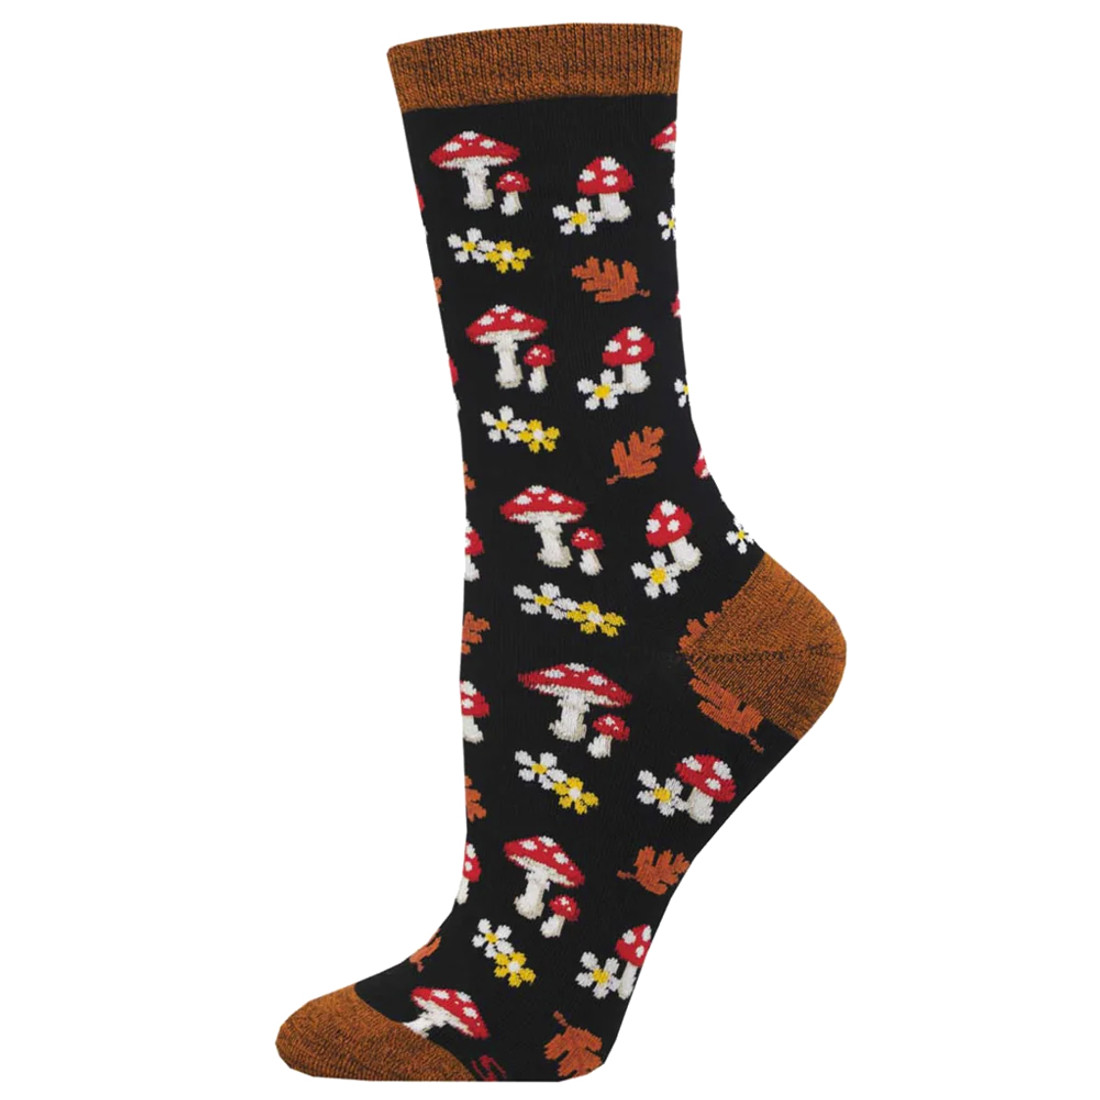 Socksmith Women's Socks - Gems Of The Forest - Black